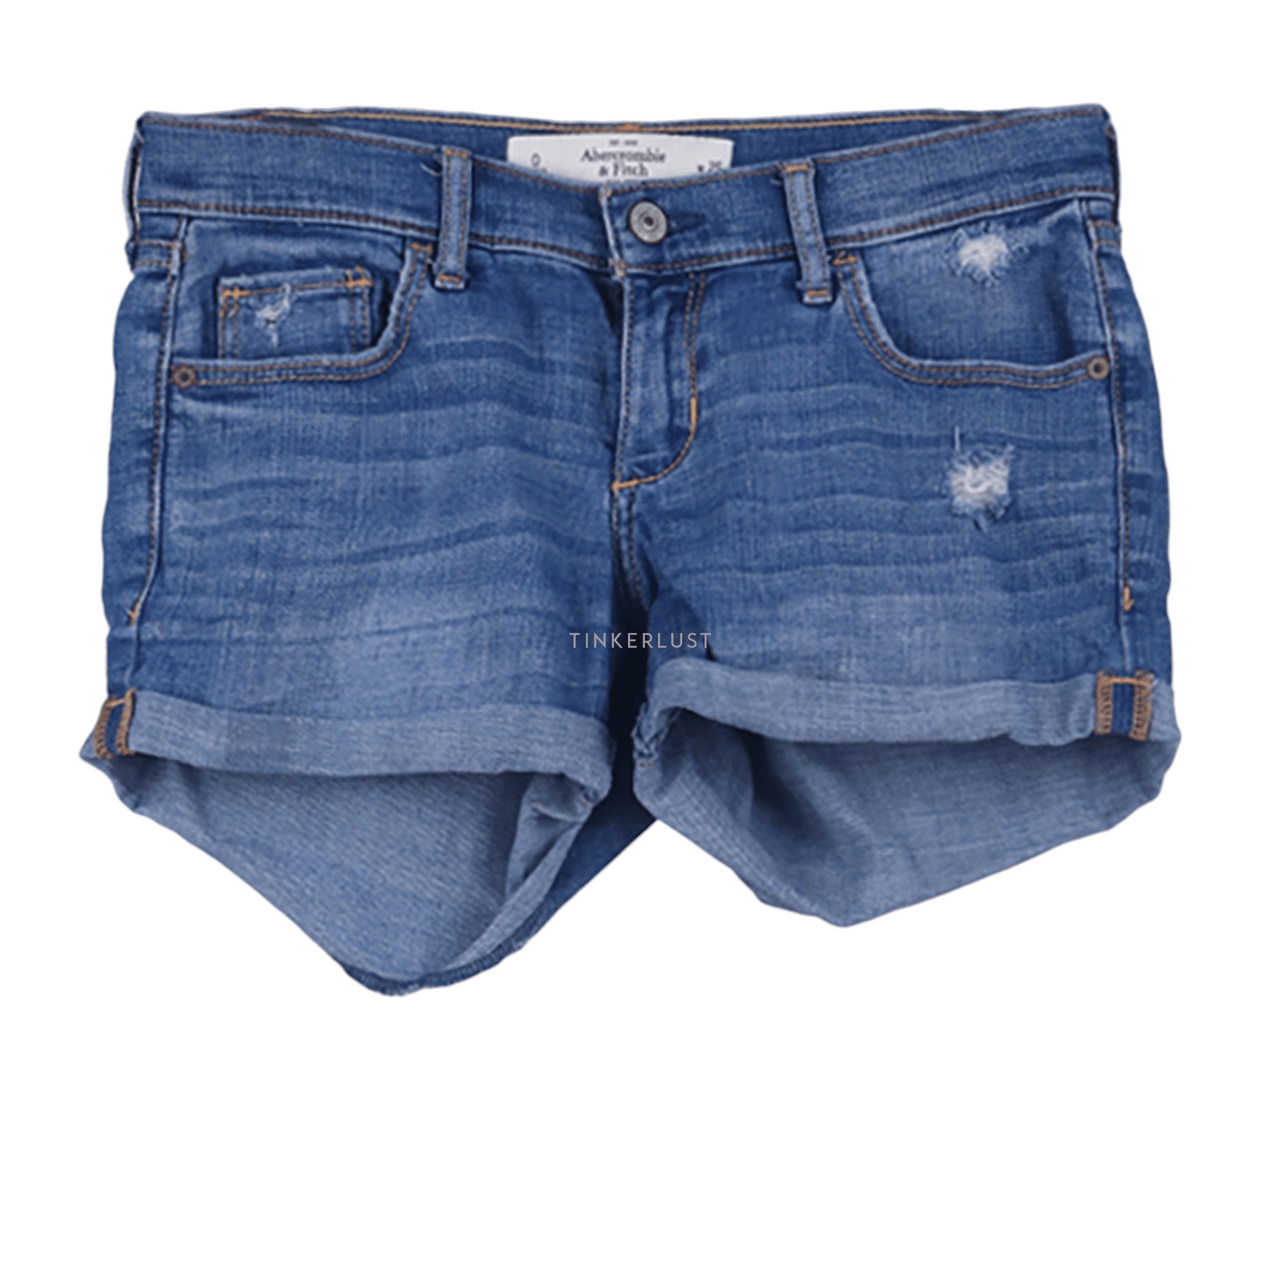 Abercrombie & Fitch Blue Jeans Short Pants